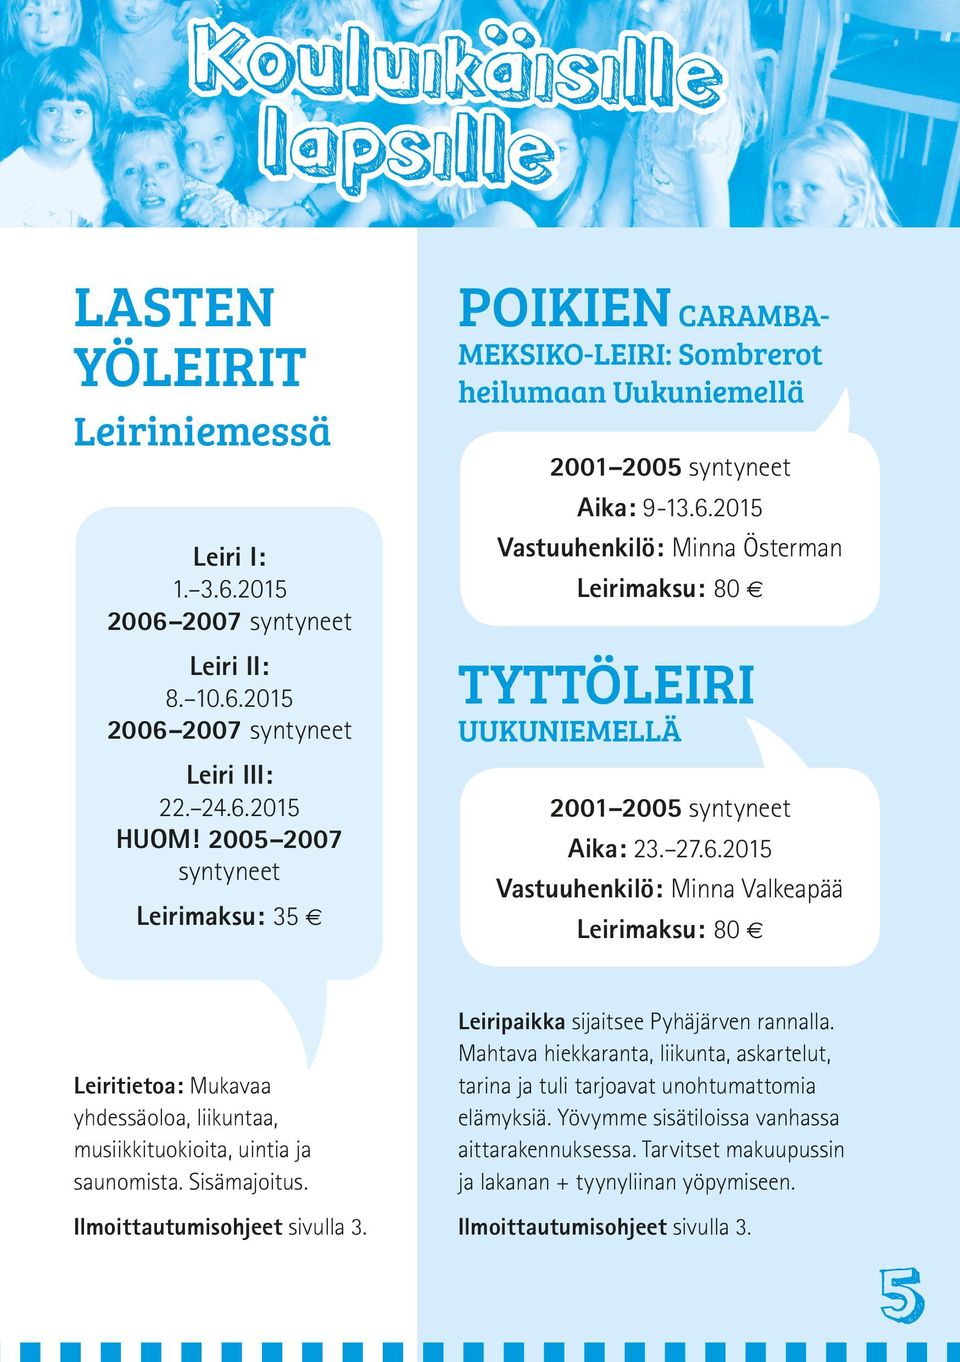 2015 Vastuuhenkilö: Minna Österman Leirimaksu: 80 TYTTÖLEIRI UUKUNIEMELLÄ 2001 2005 syntyneet Aika: 23. 27.6.